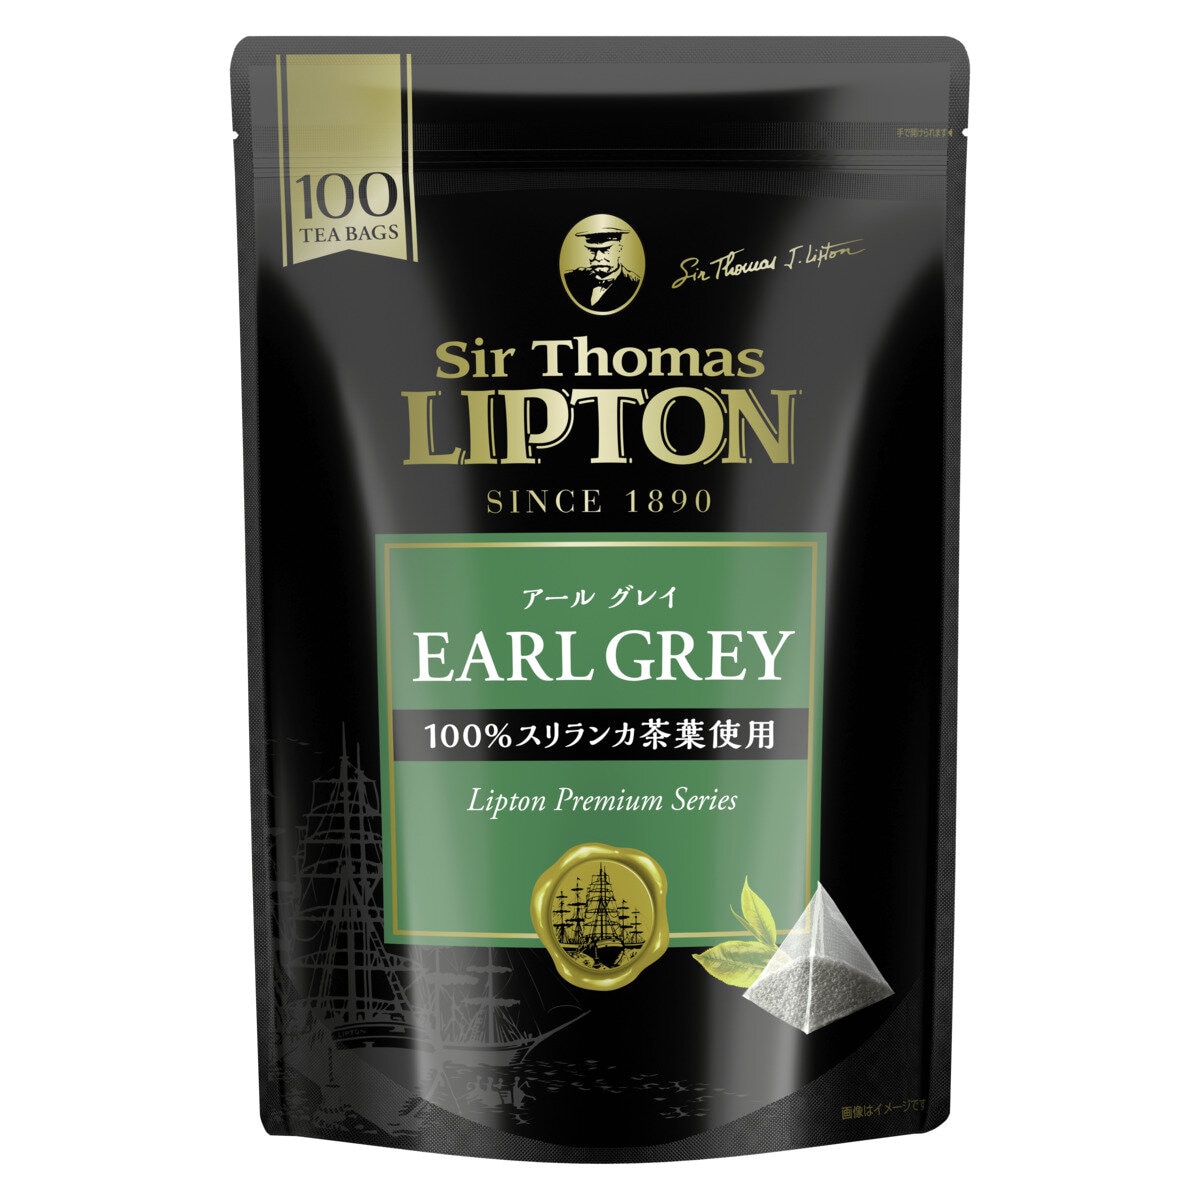 サー・トーマス・リプトン アールグレイ 紅茶 100P Costco Japan